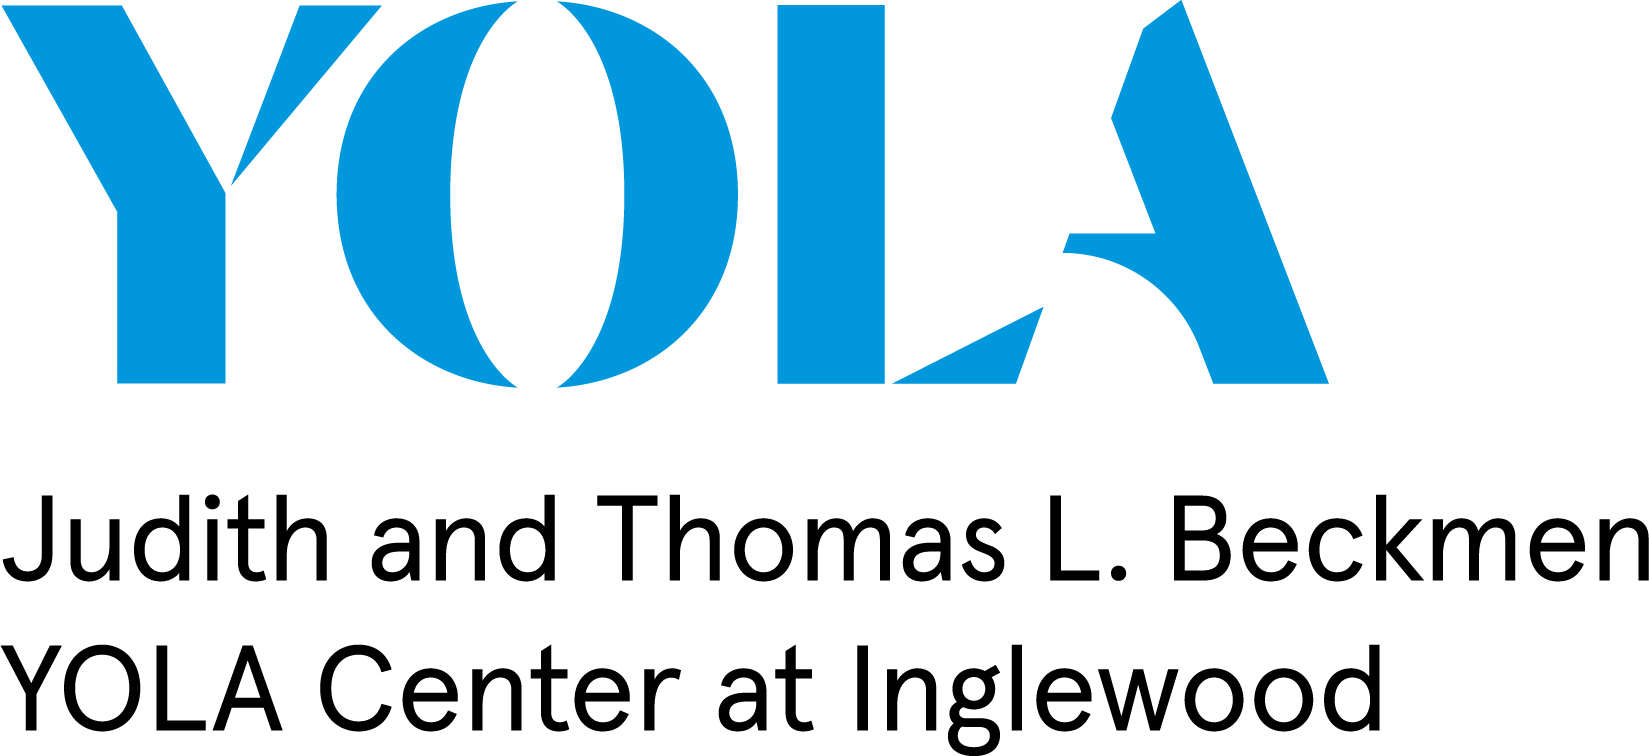 Yola Logo - YOLA Center at Inglewood Press Kit | Hollywood Bowl